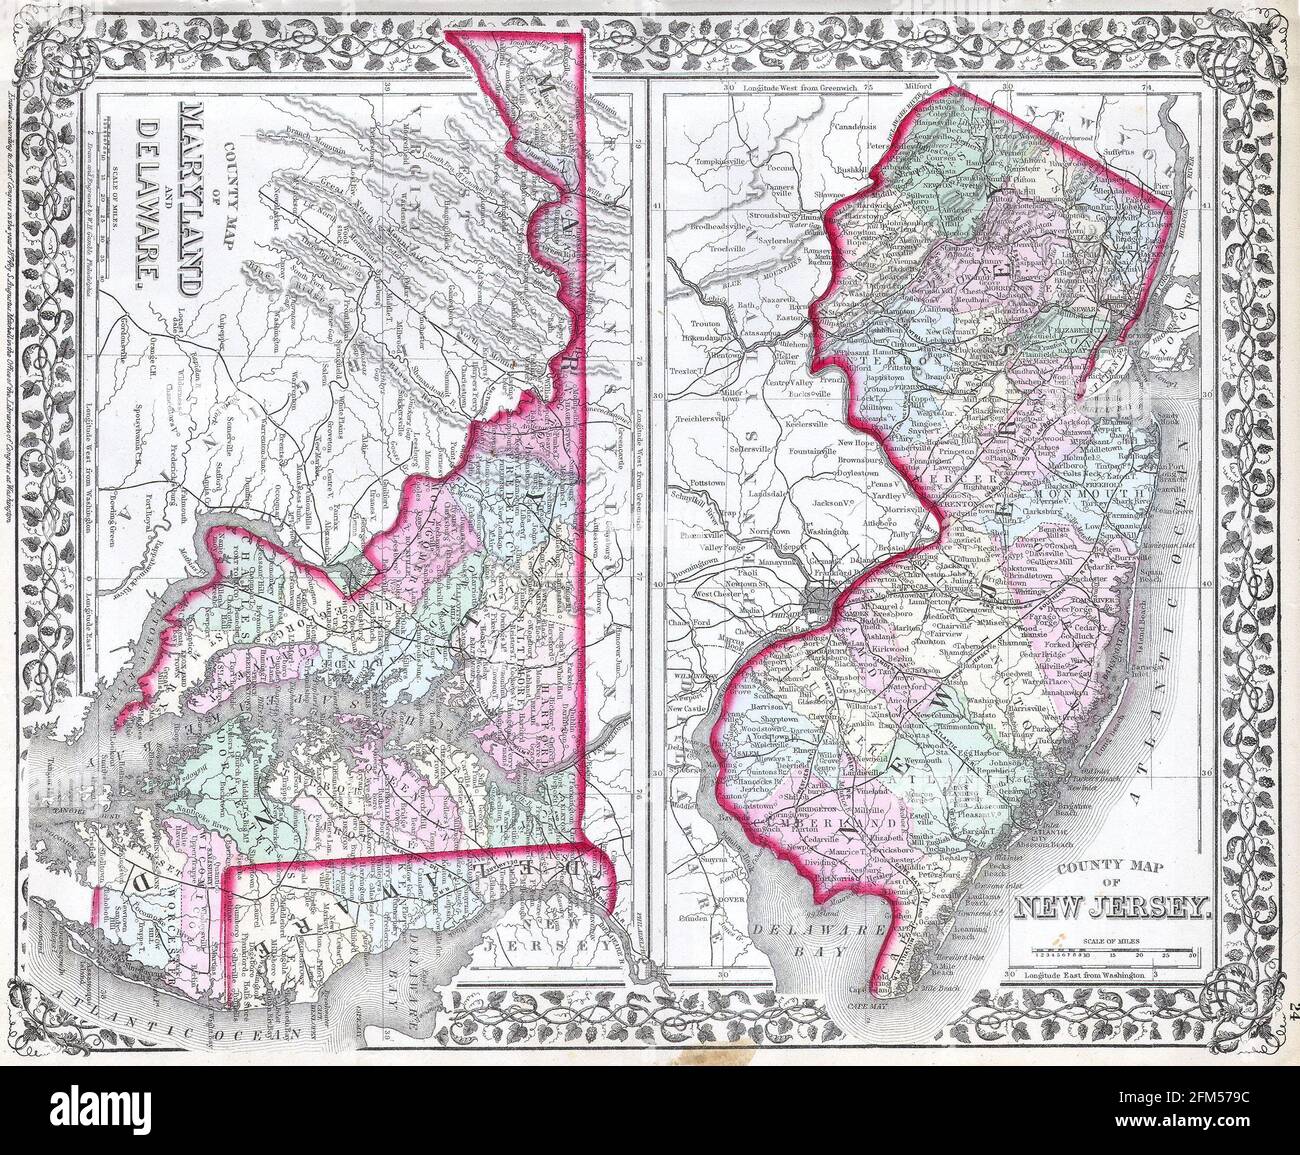 Carta d'epoca in rame incisa del Delaware del XIX secolo. Tutte le mappe sono splendidamente colorate e illustrate mostrando il mondo in quel momento. Foto Stock